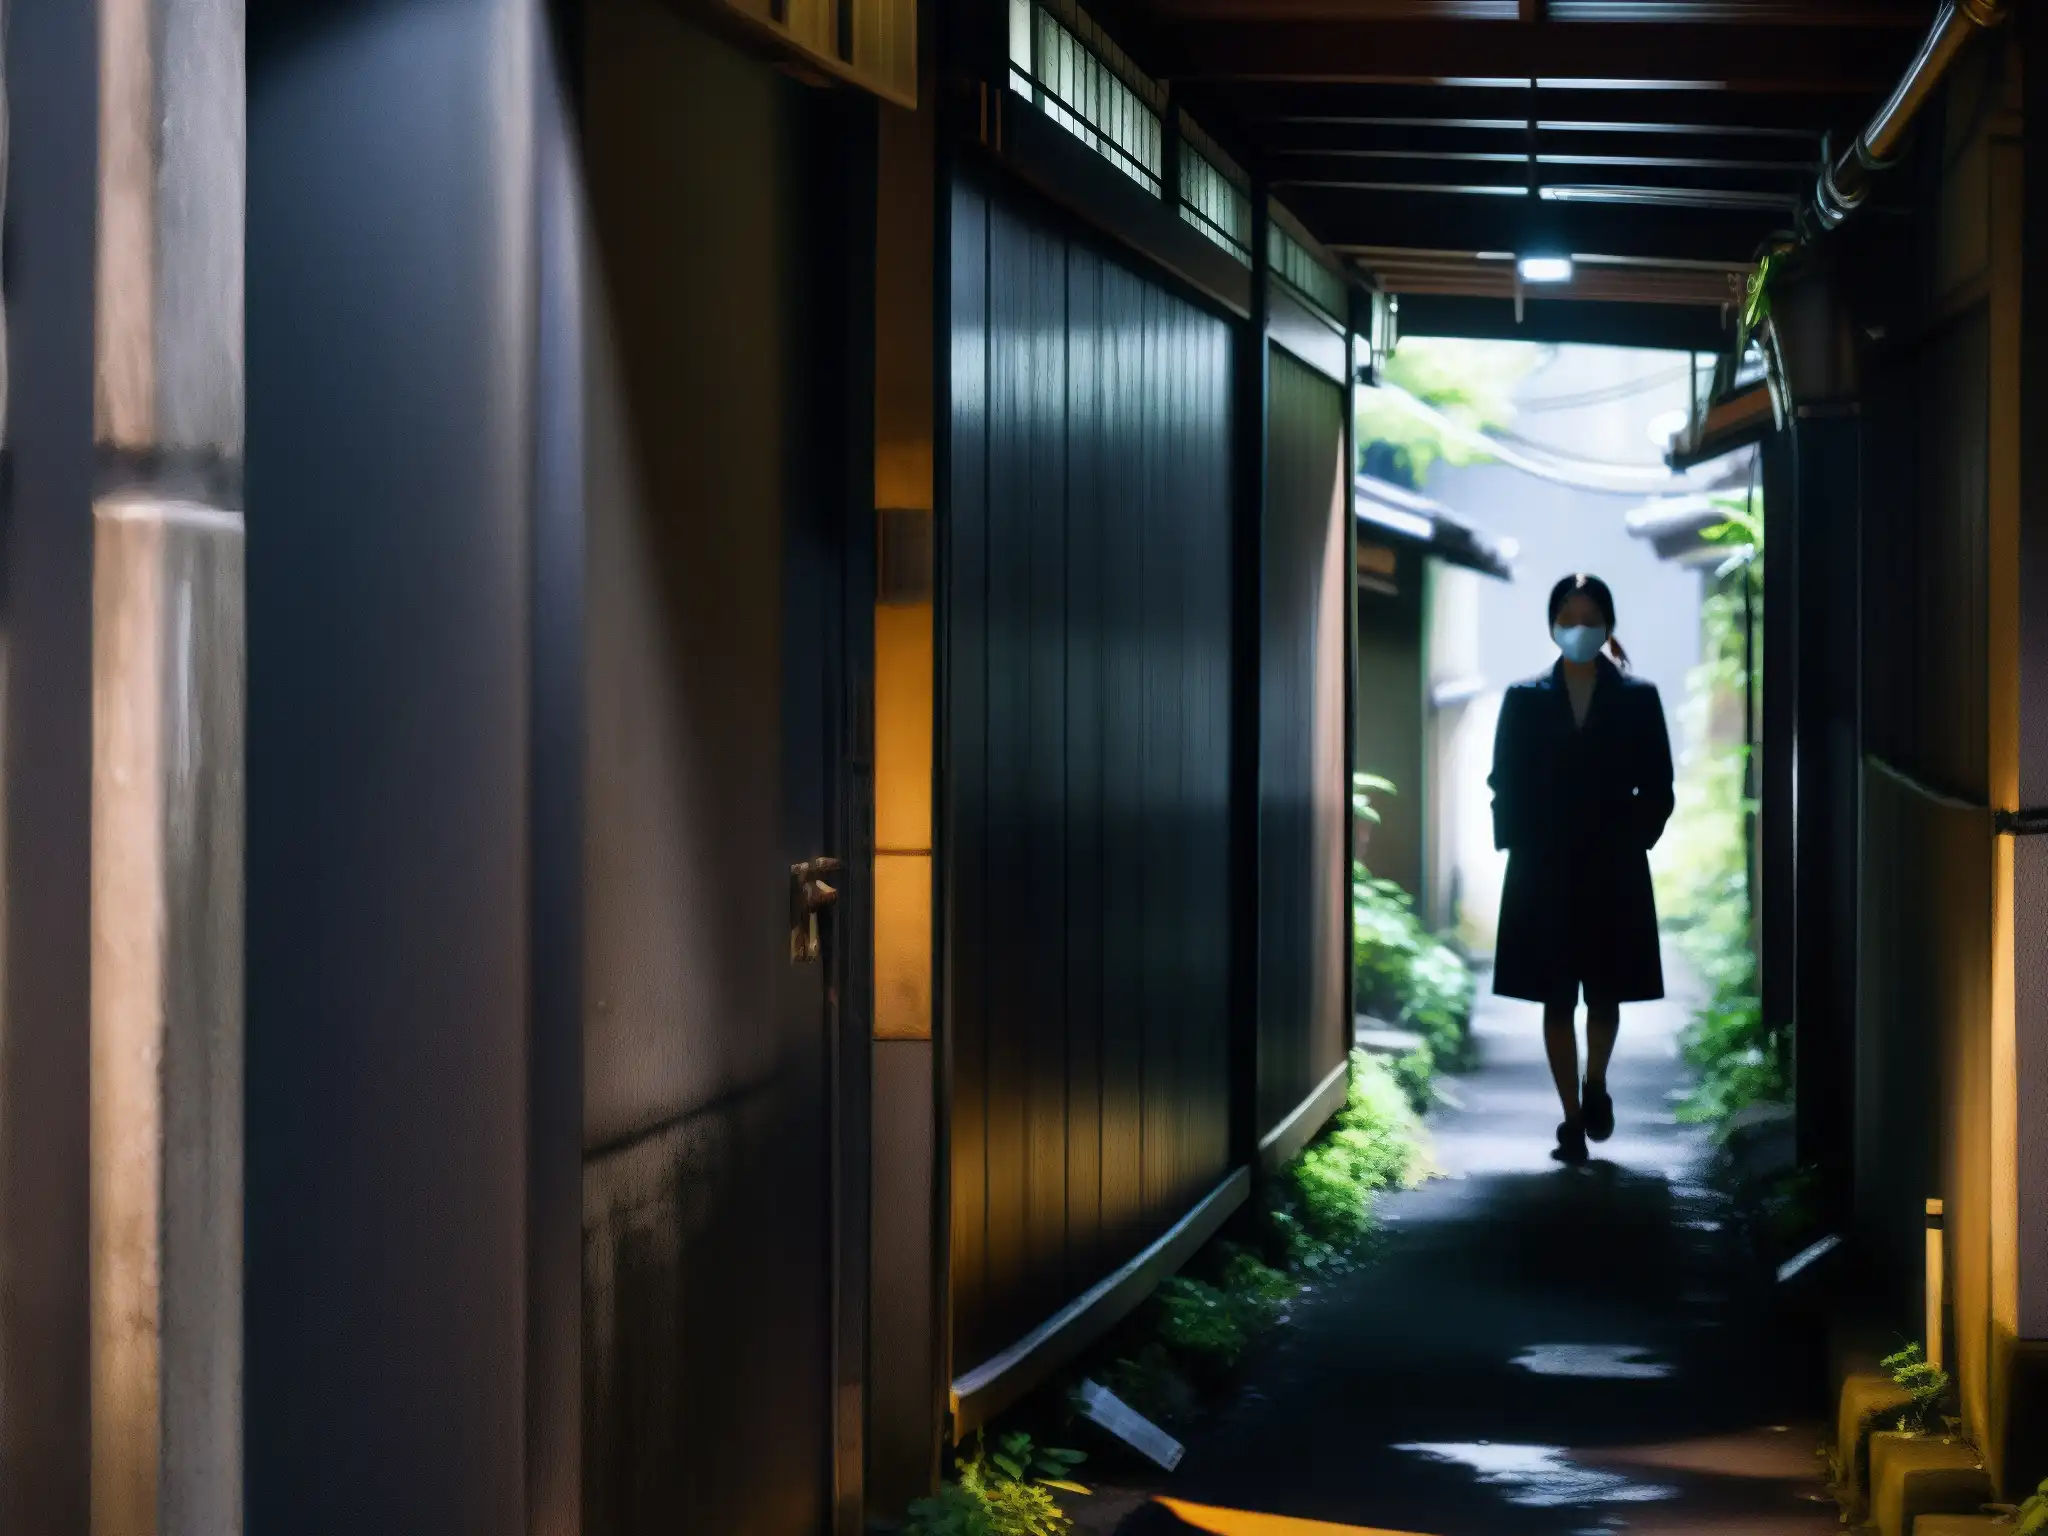 Una inquietante imagen de un oscuro callejón en Japón con la silueta de una mujer enmascarada